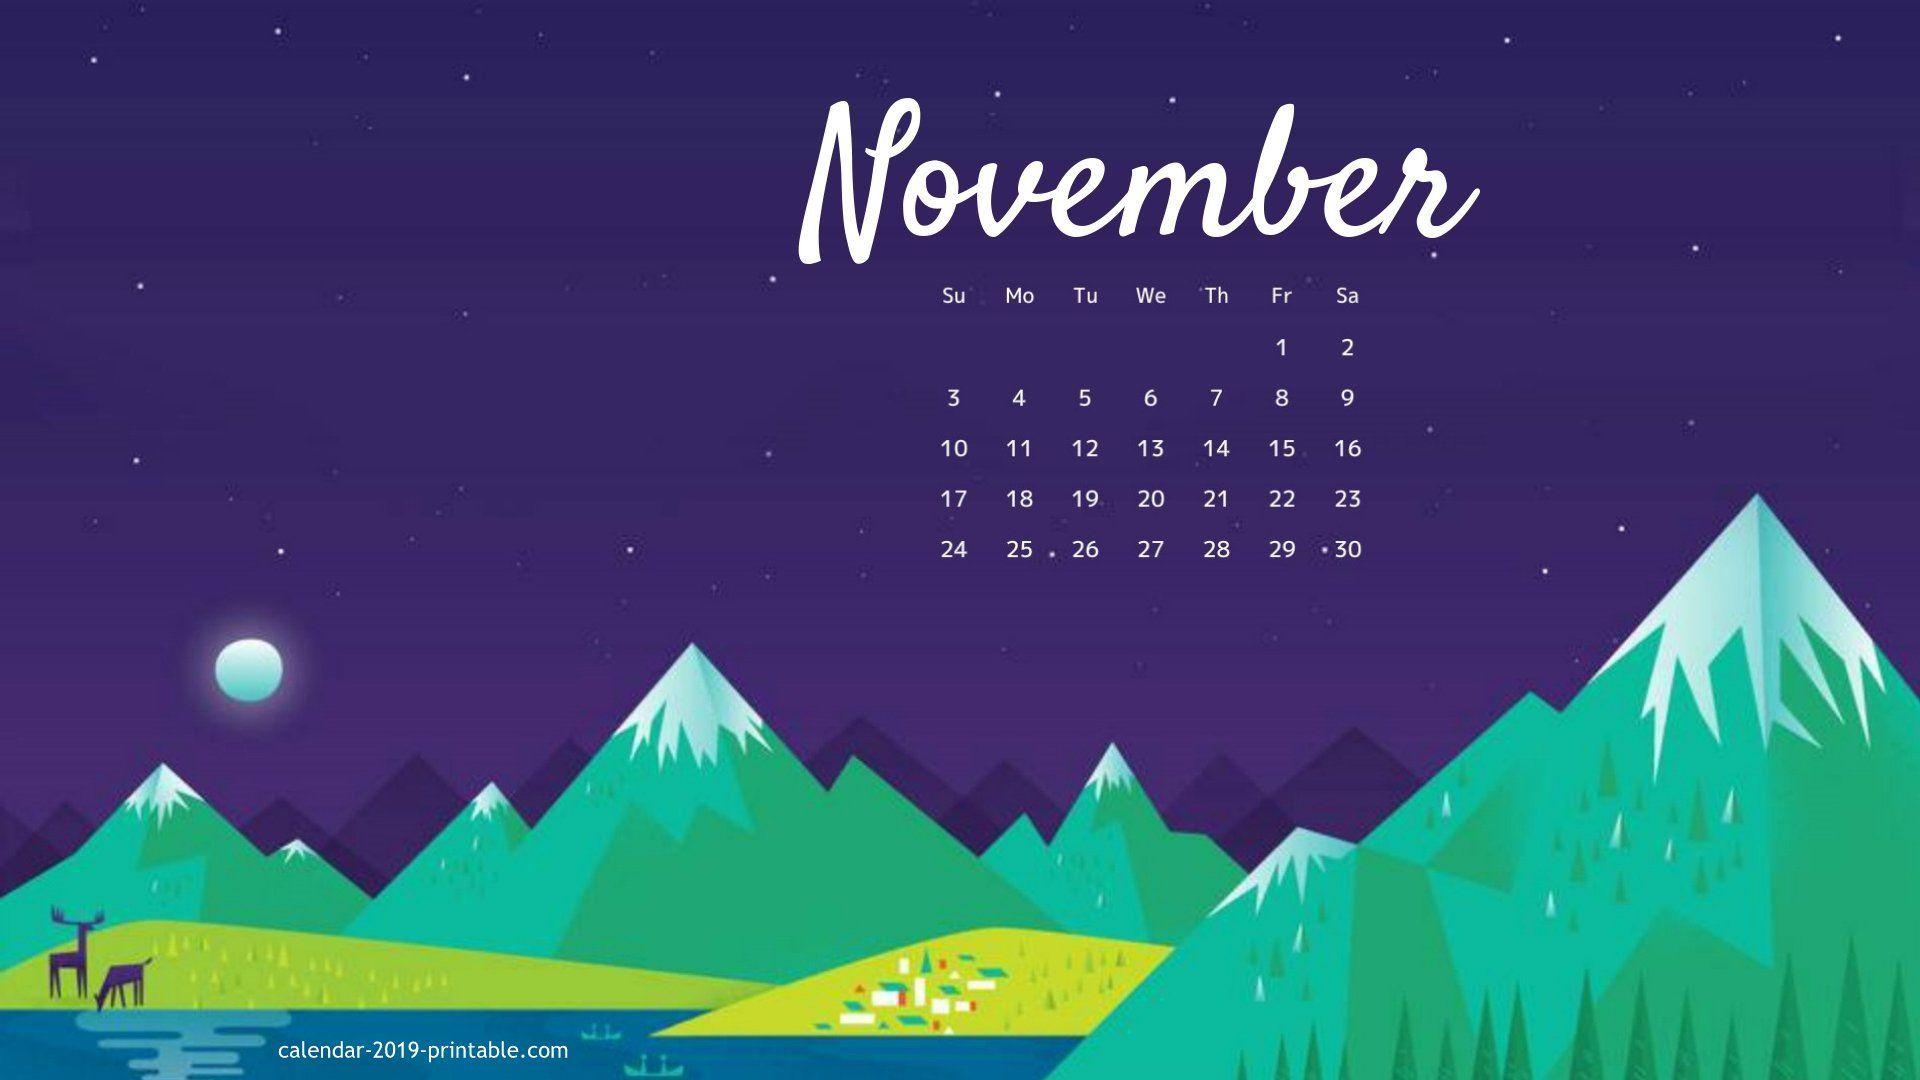 november 2019 calendar desktop wallpaper. Calendar 2019 Wallpaper